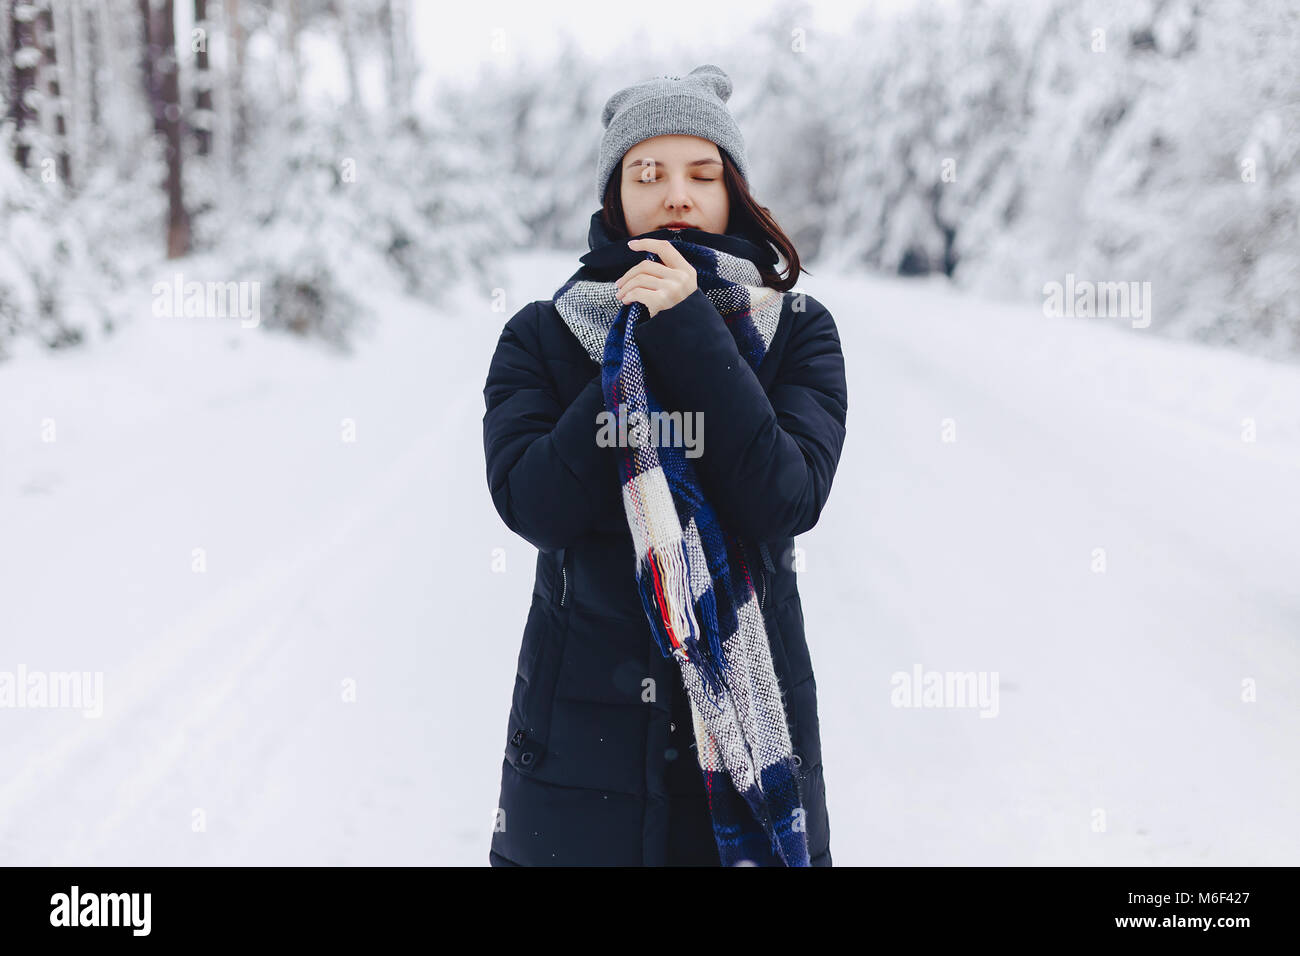 15 Creative Ideas for a Magical Snow Photoshoot